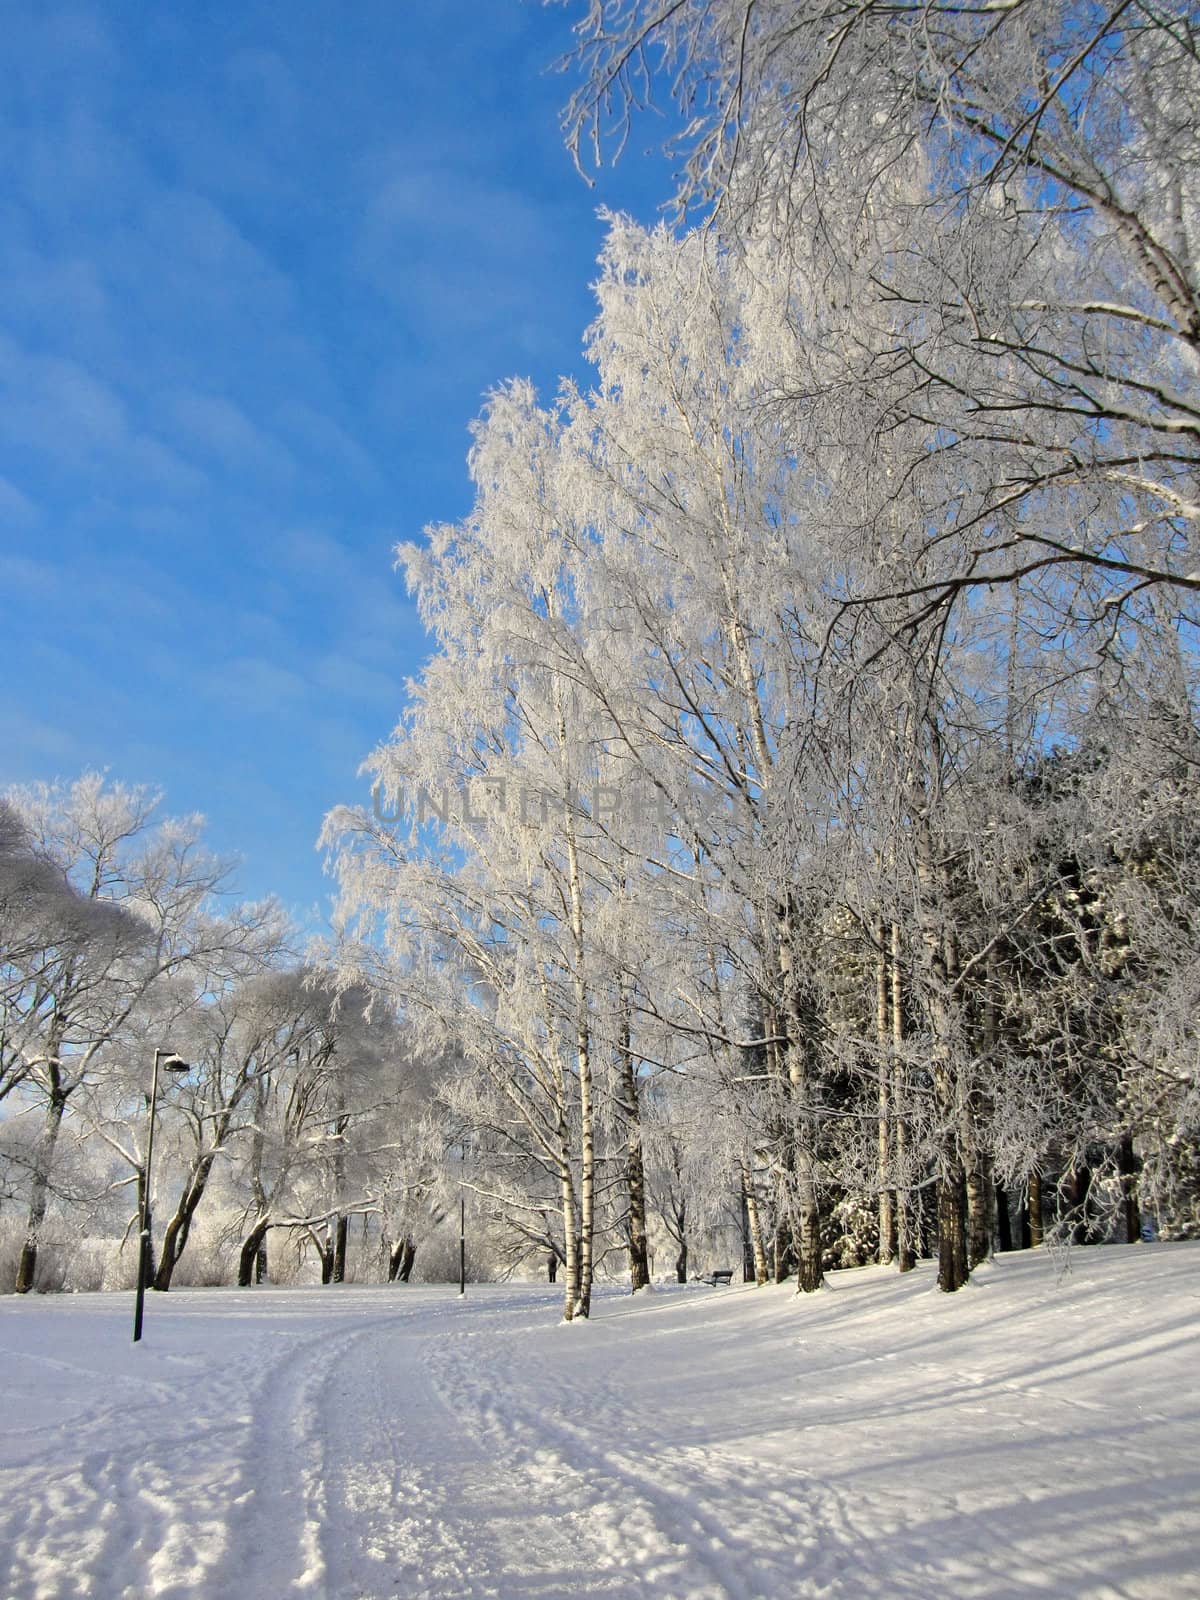 Snowy park frozen trees background by anterovium